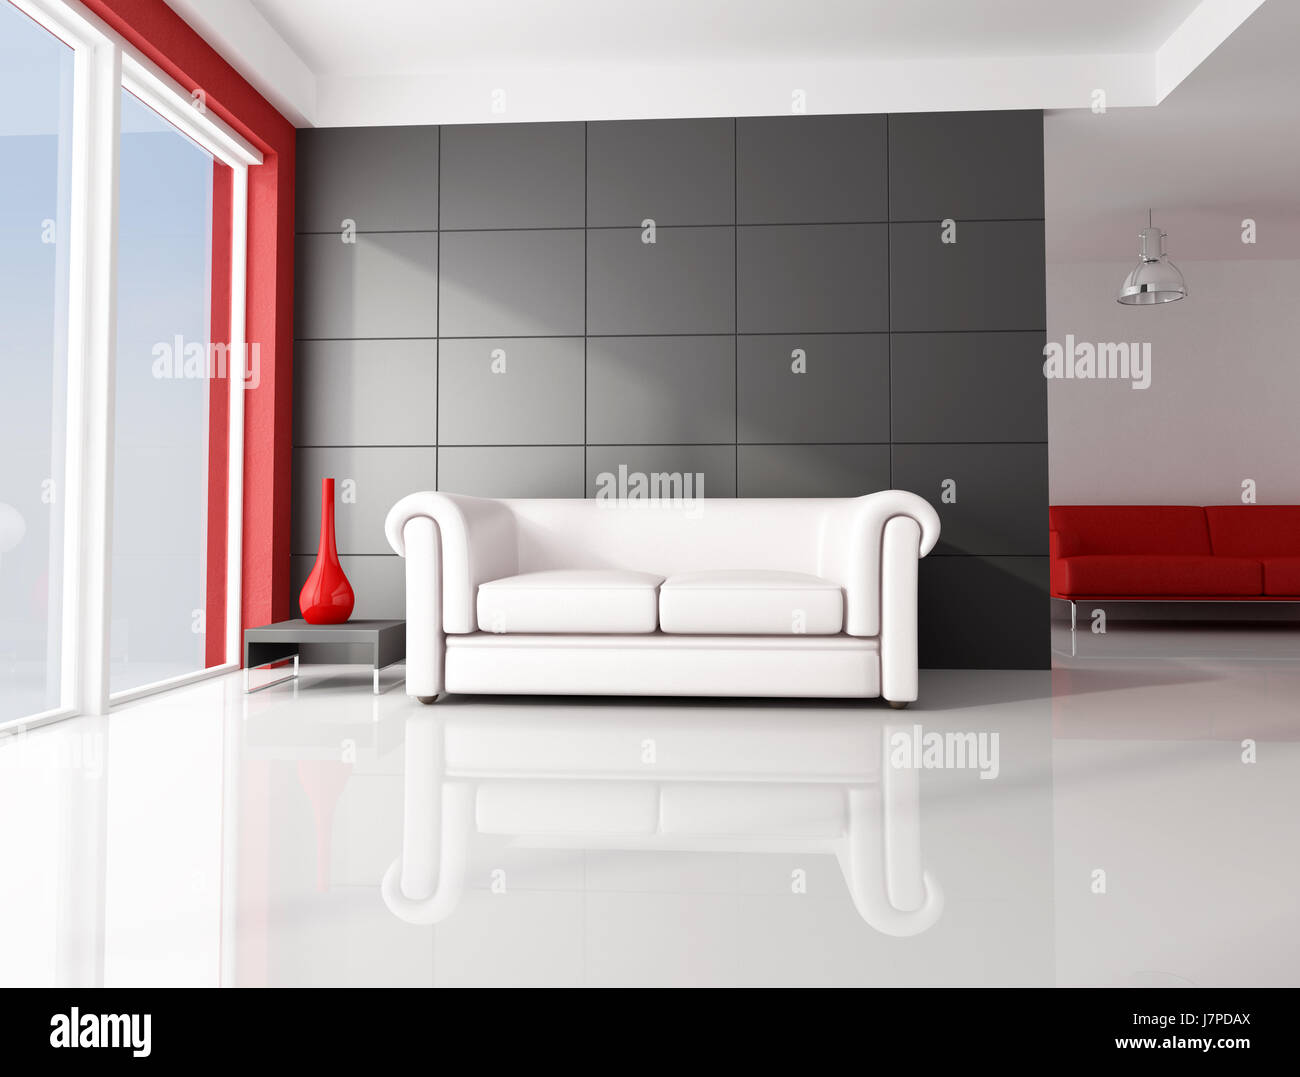 Chambre mobilier minimaliste de l'intérieur salon salon moderne mobilier accueil Banque D'Images